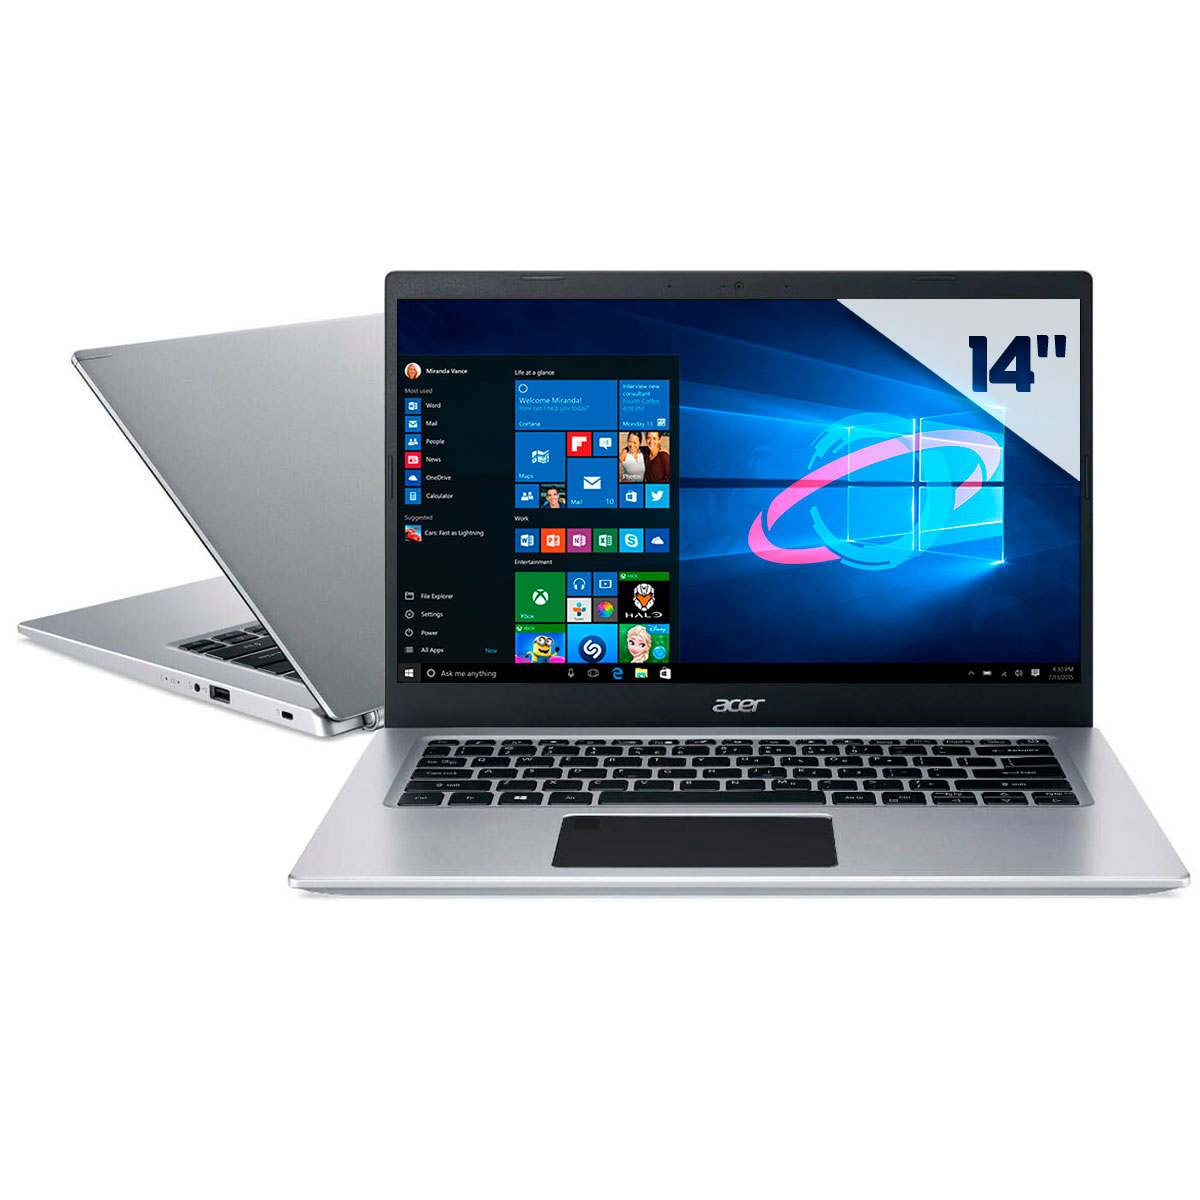 Notebook Acer Aspire A514-53-5239 - Intel i5 1035G1, RAM 20GB, SSD 256GB, Tela 14